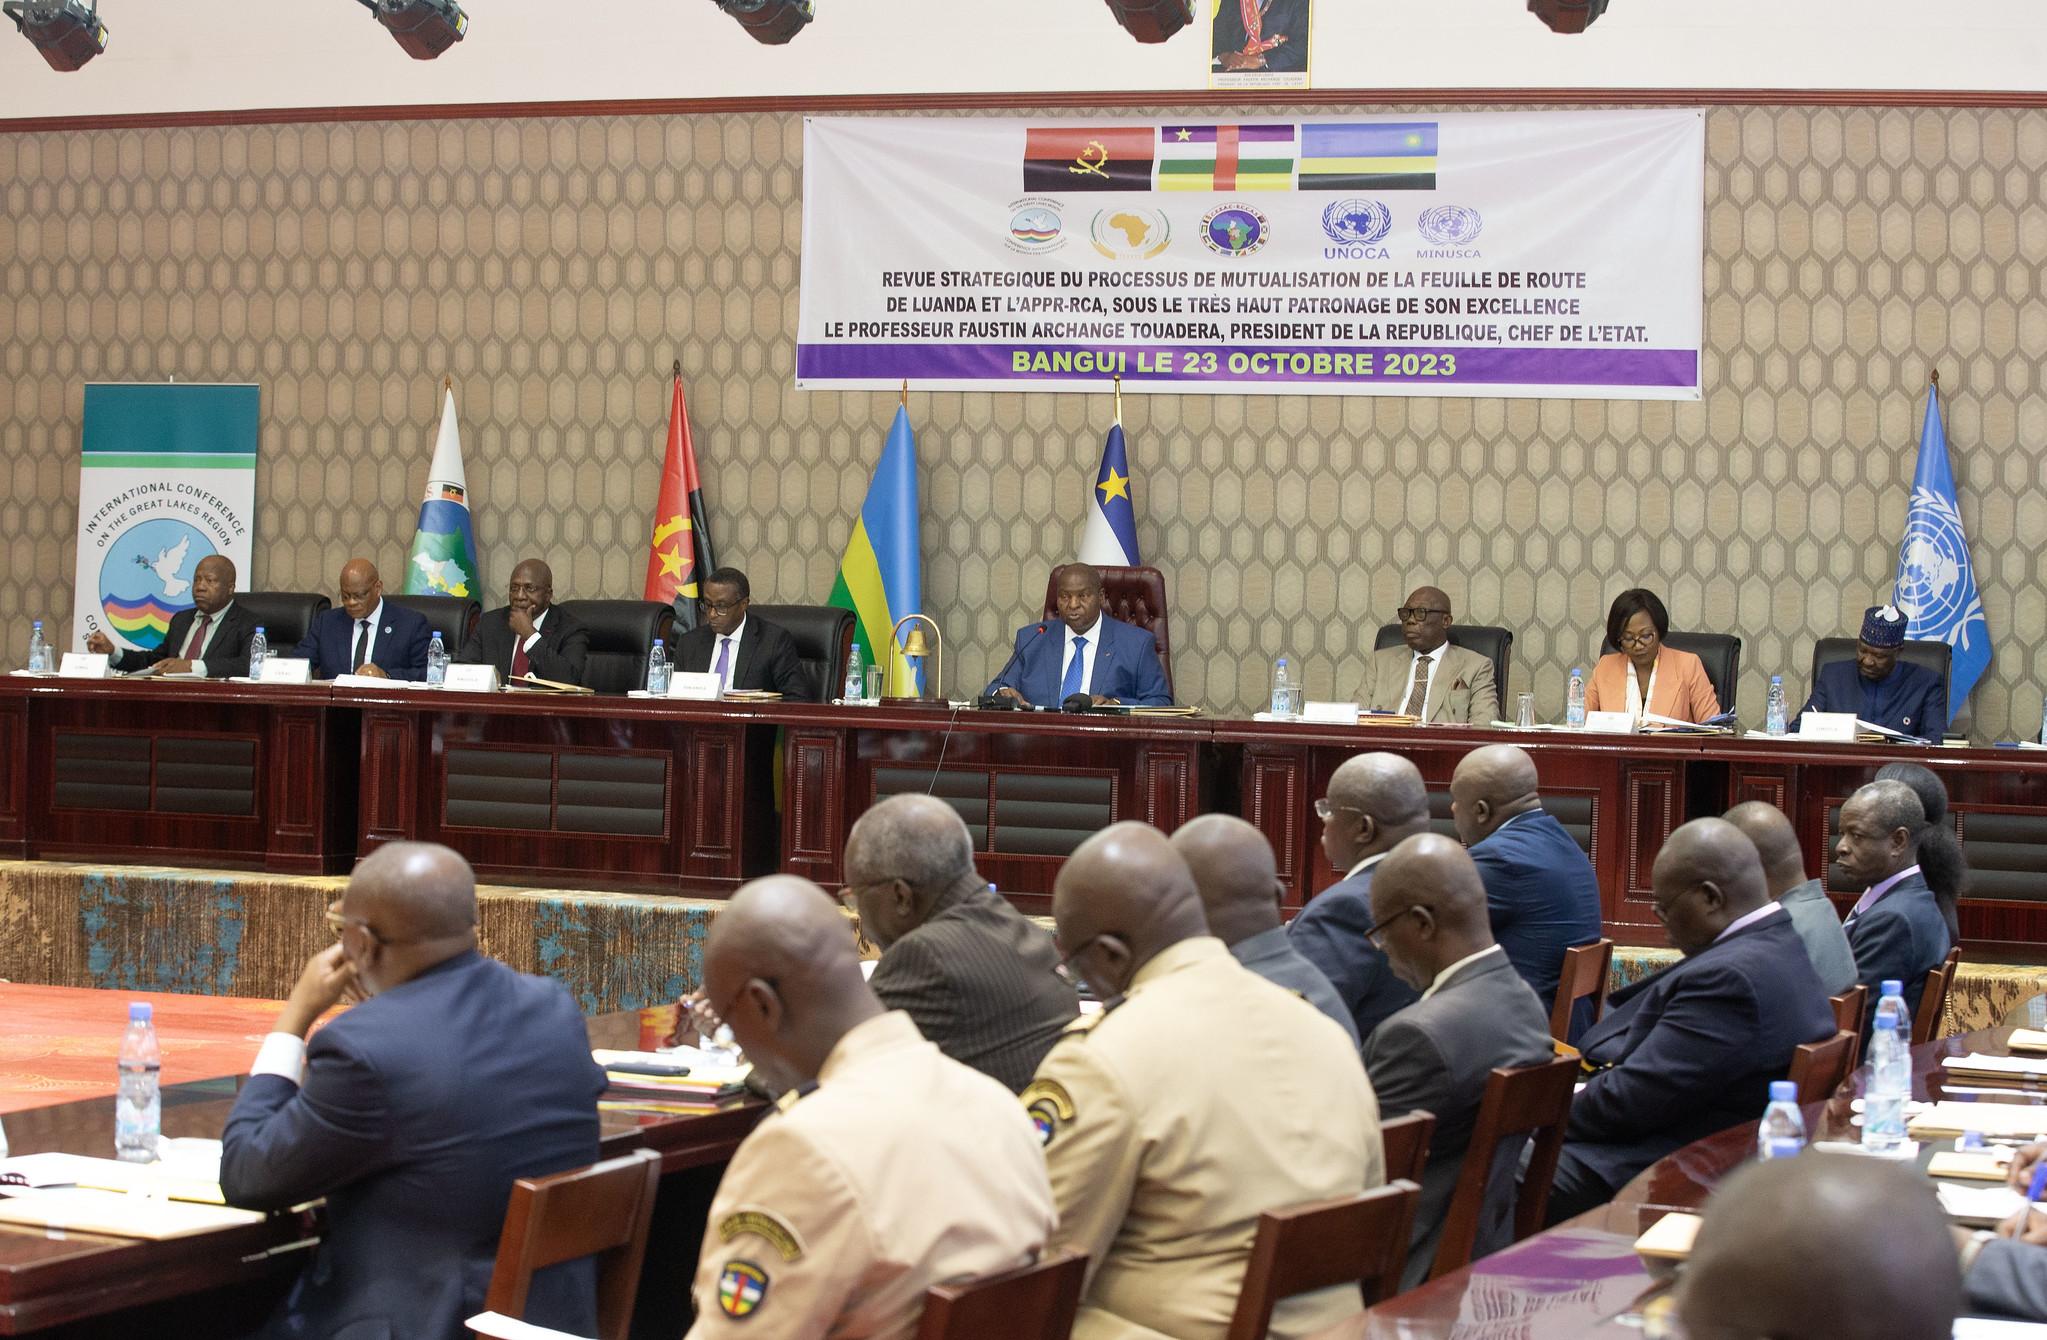 Le président centrafricain Touadera réitère sa volonté à restaurer la paix dans son pays